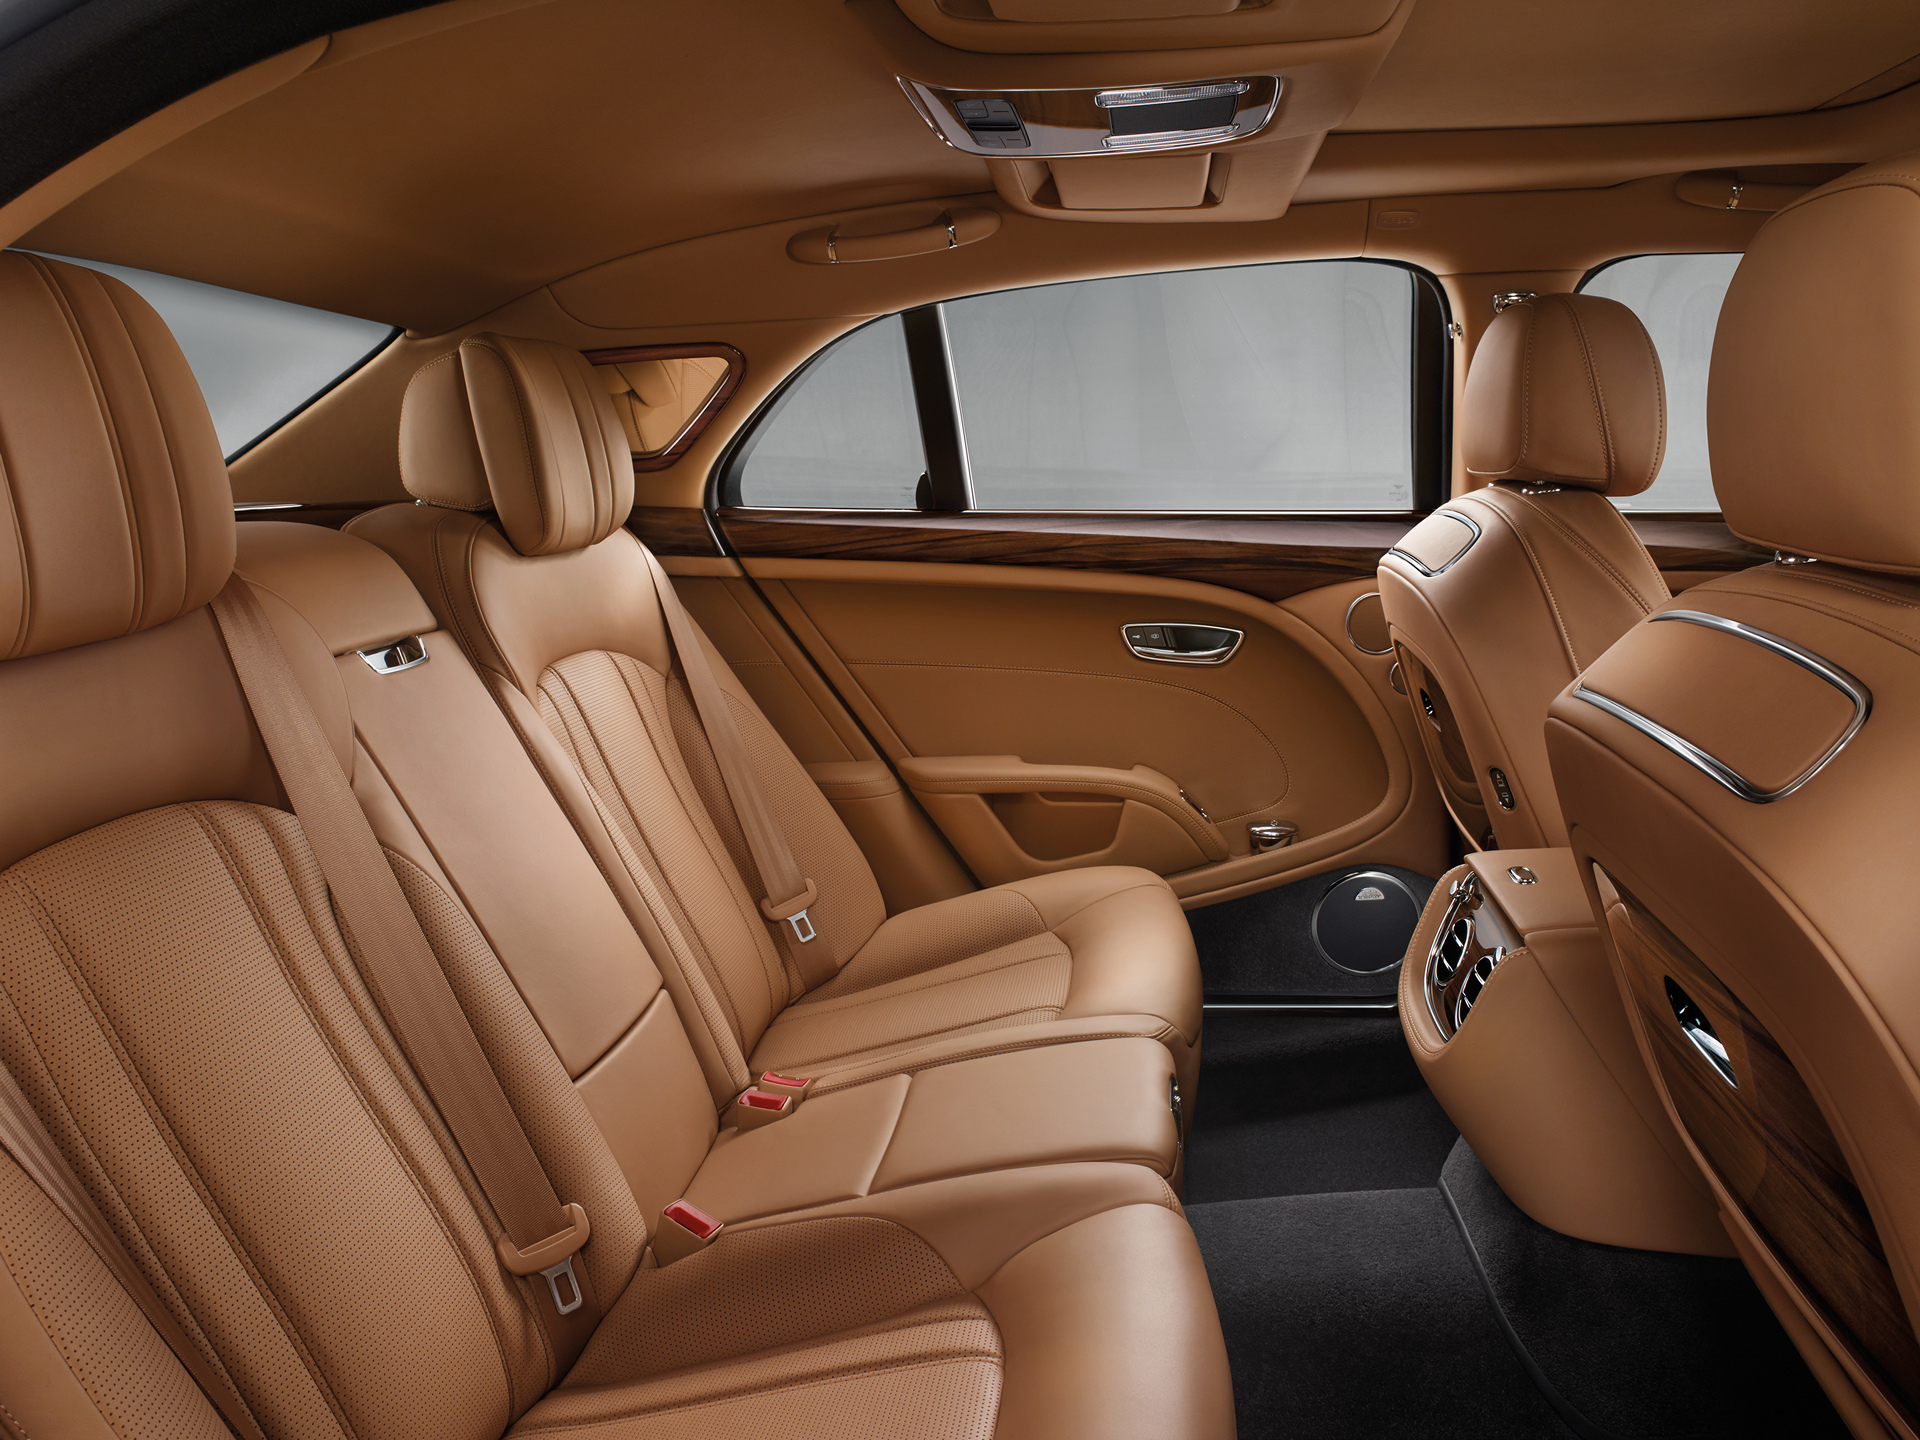 Bentley Mulsanne © Volkswagen AG